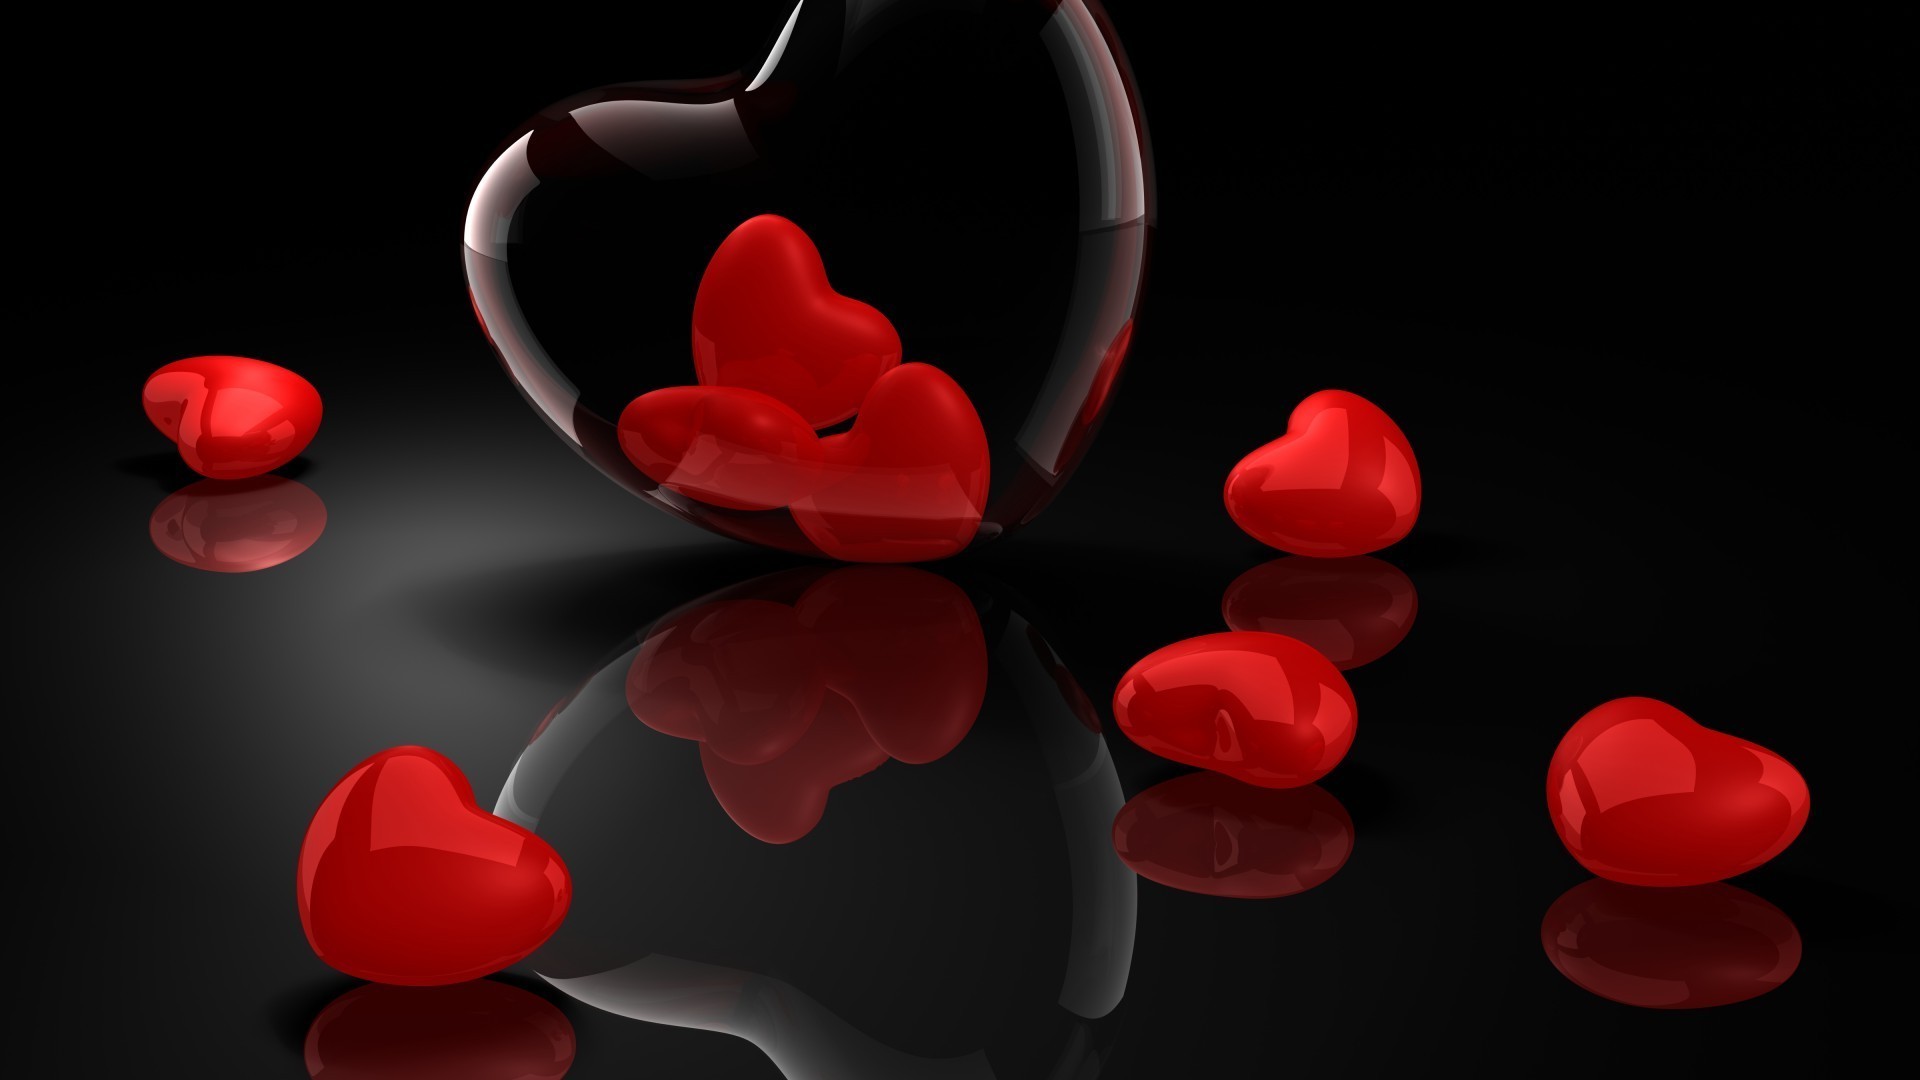 сердечки романтика любовь сердце формы романтический рабочего стола медицина аннотация день святого валентина иллюстрация любовь символ